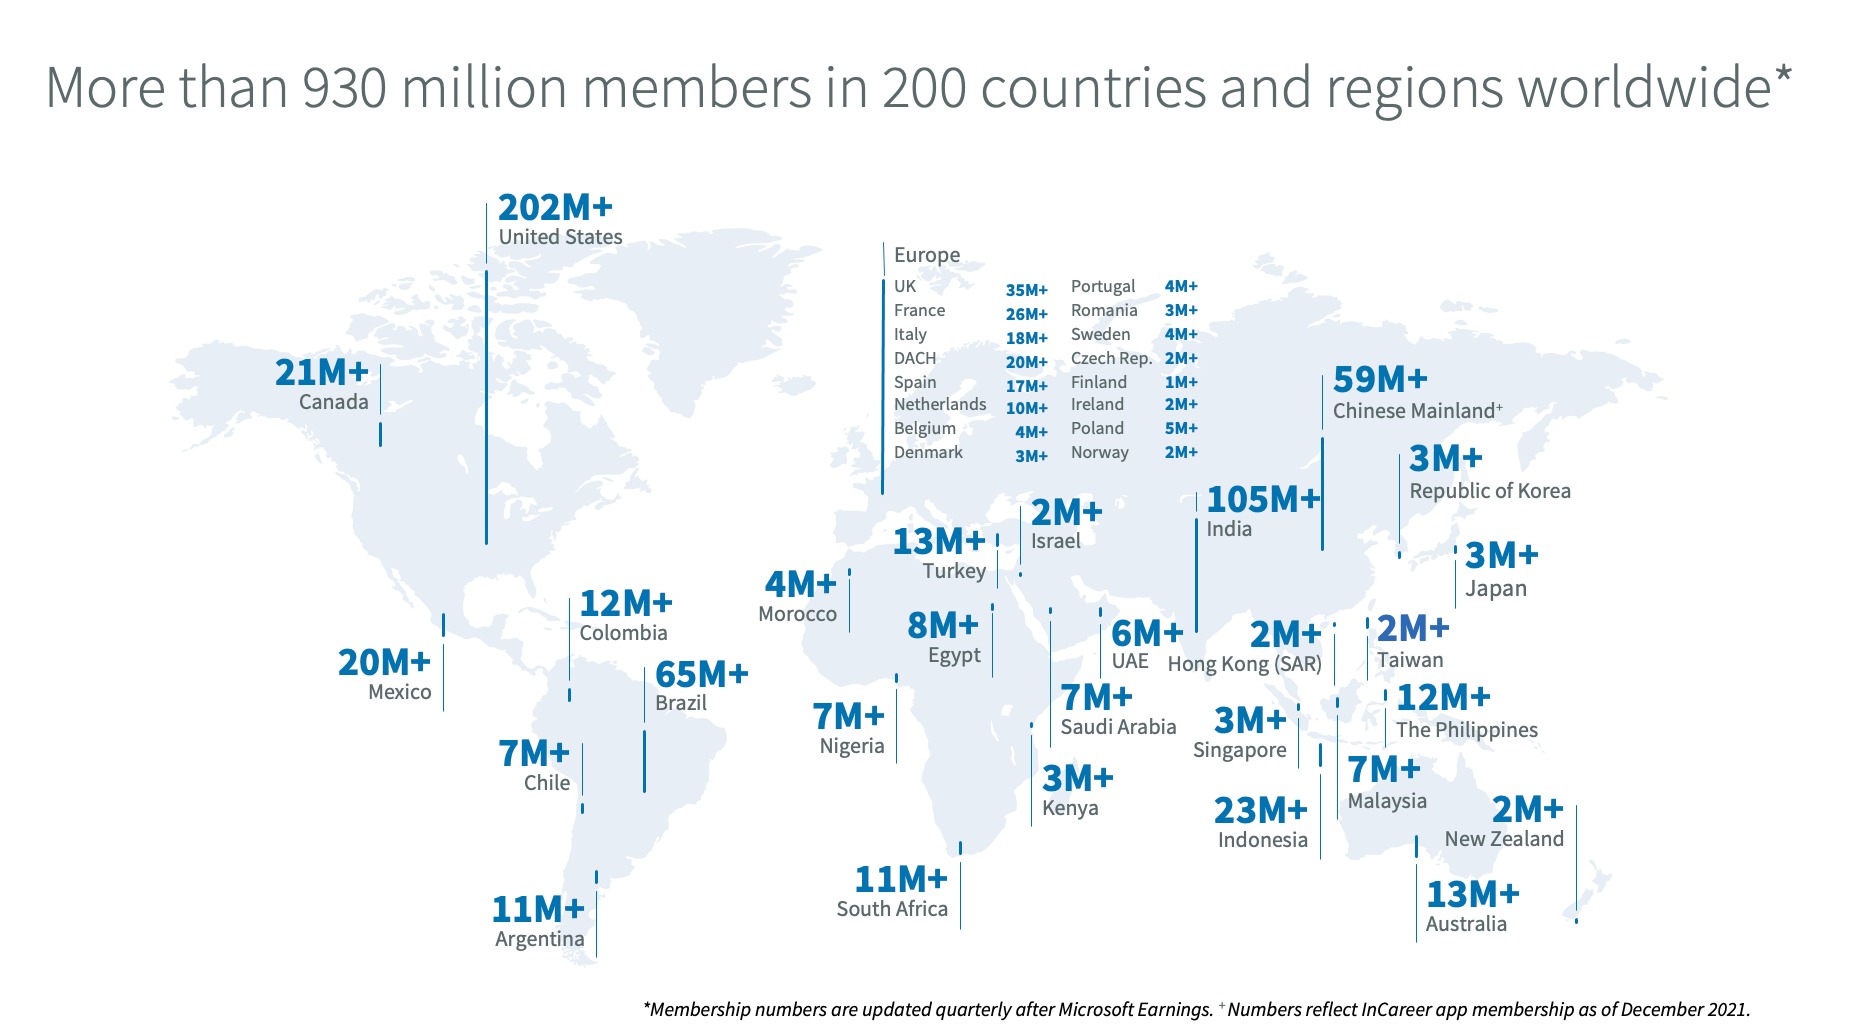 Map monde avec pour chaque région du monde des données chiffrées. Par exemple, plus de 202 million aux Etats Unis, 105 million en Inde, 23 million en Indonésie, 26 million en France etc.